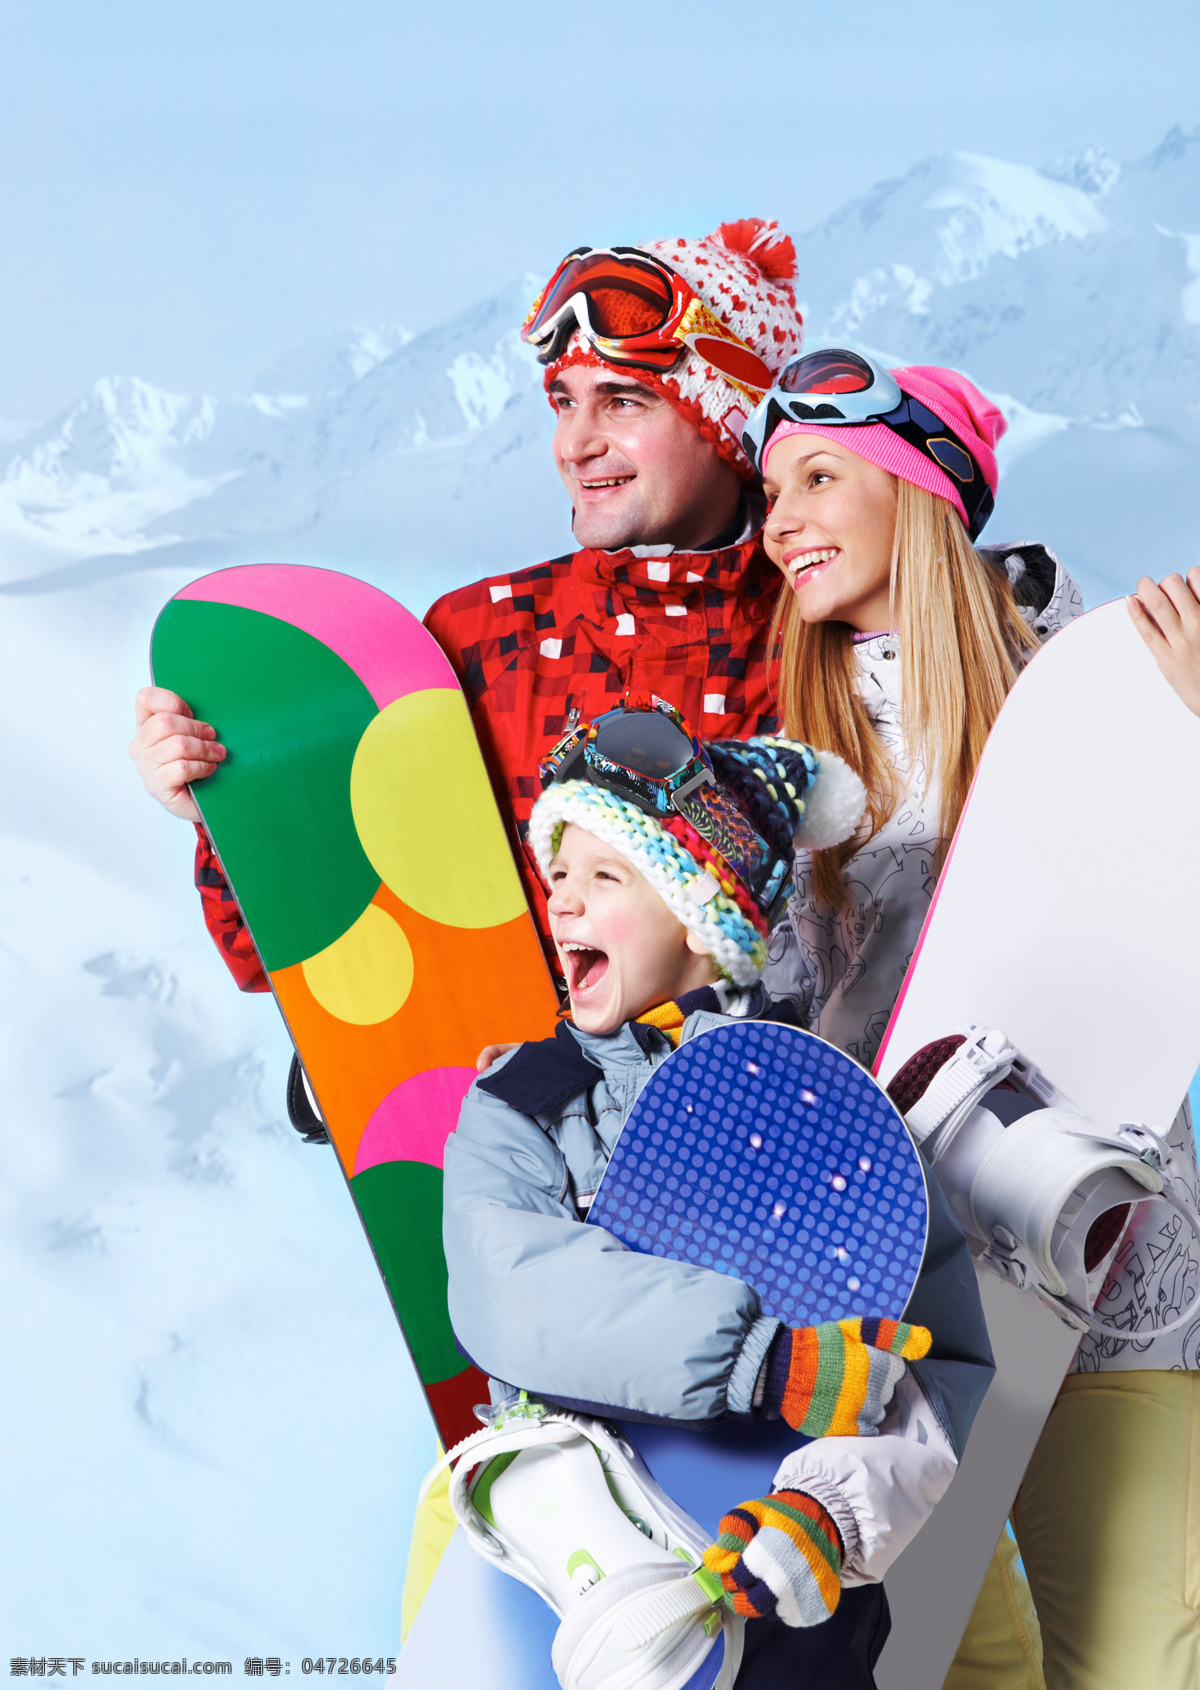 滑雪 工具 一家人 外国一家 滑雪板 滑雪工具 雪地 雪景 微笑 雪山 运动 滑雪图片 生活百科